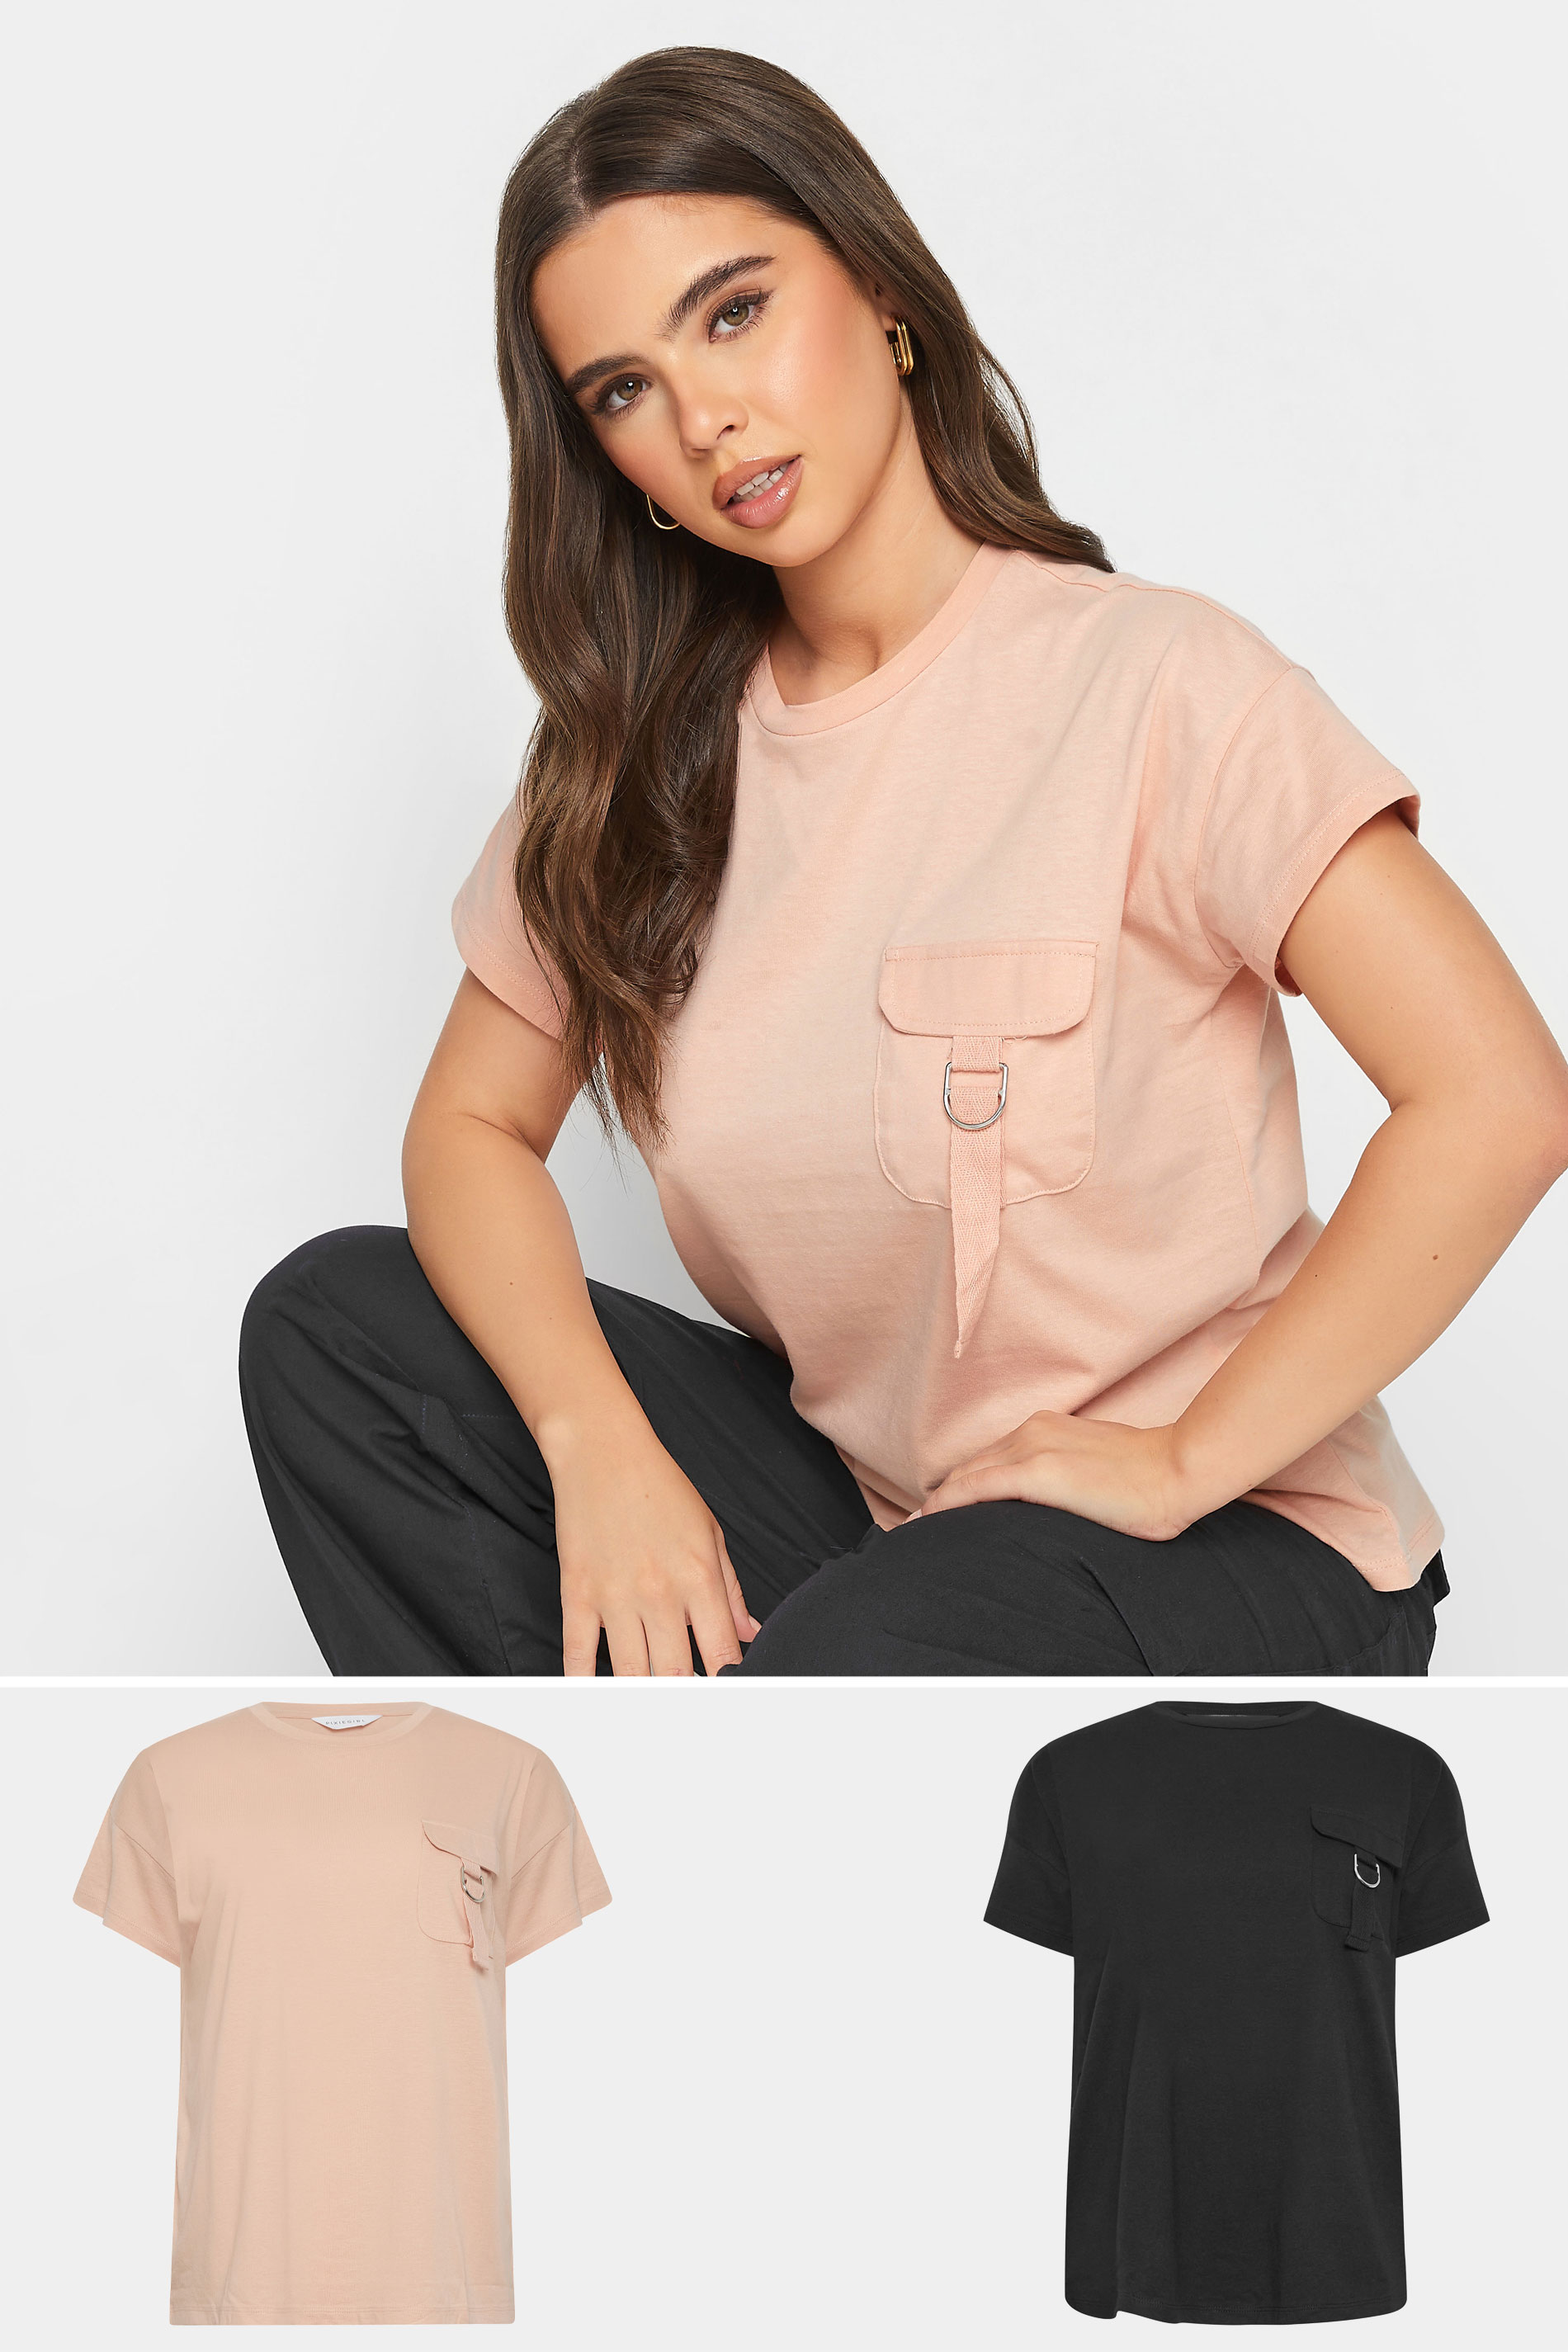 PixieGirl 2 PACK Pink & Black Utility T-Shirts | PixieGirl 1